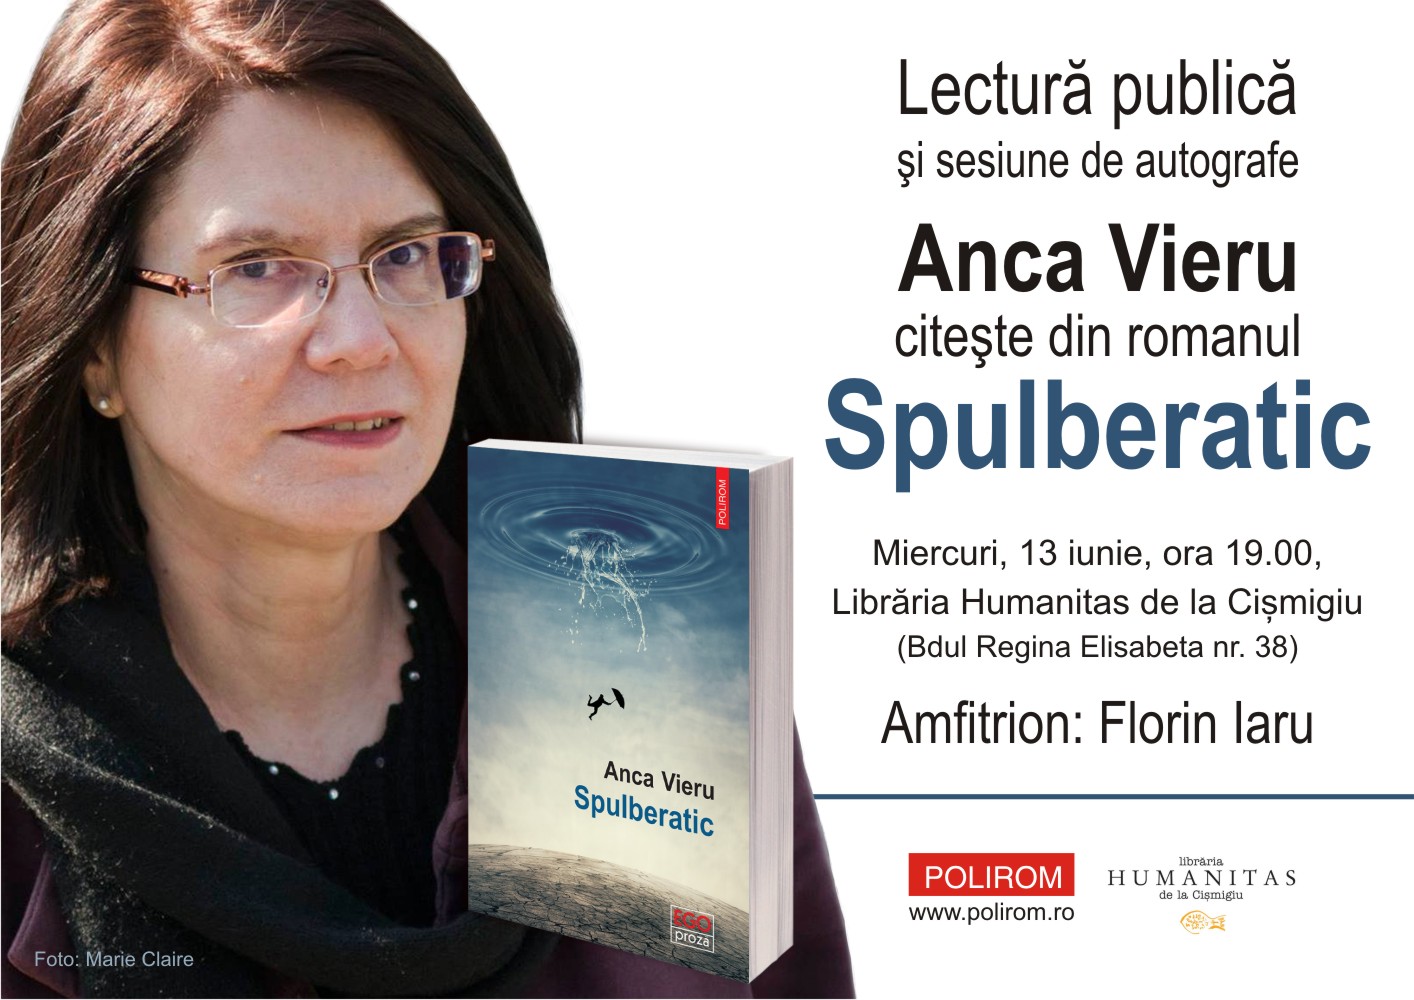 Lectură publică la București: Anca Vieru, „Spulberatic”